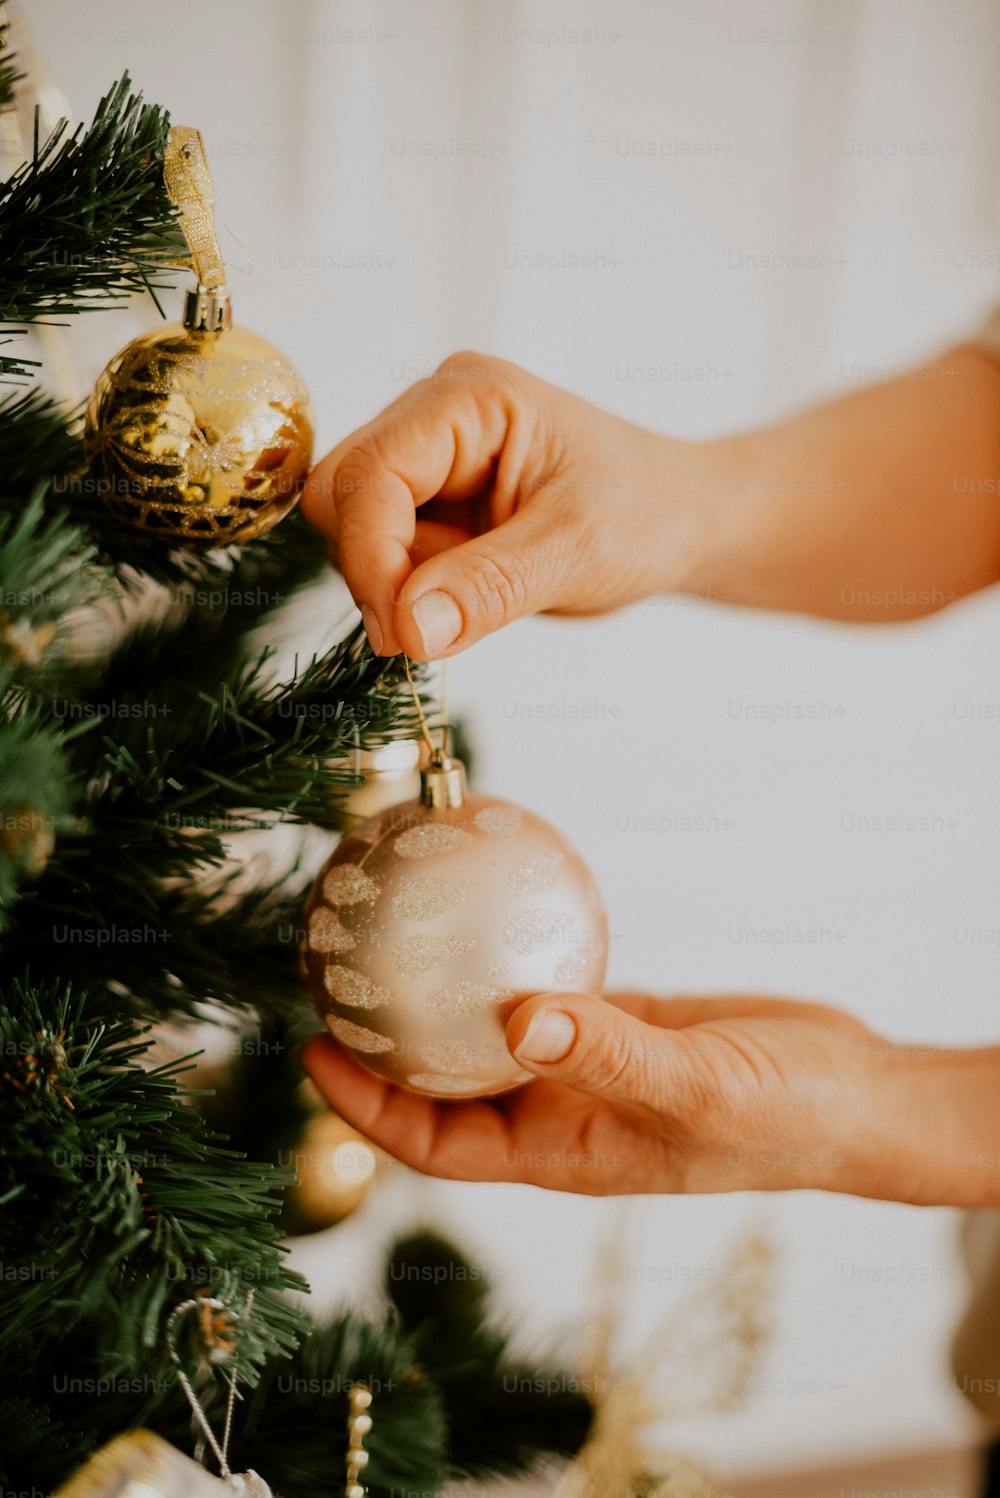 eine Person, die einen Weihnachtsbaum mit Ornamenten schmückt